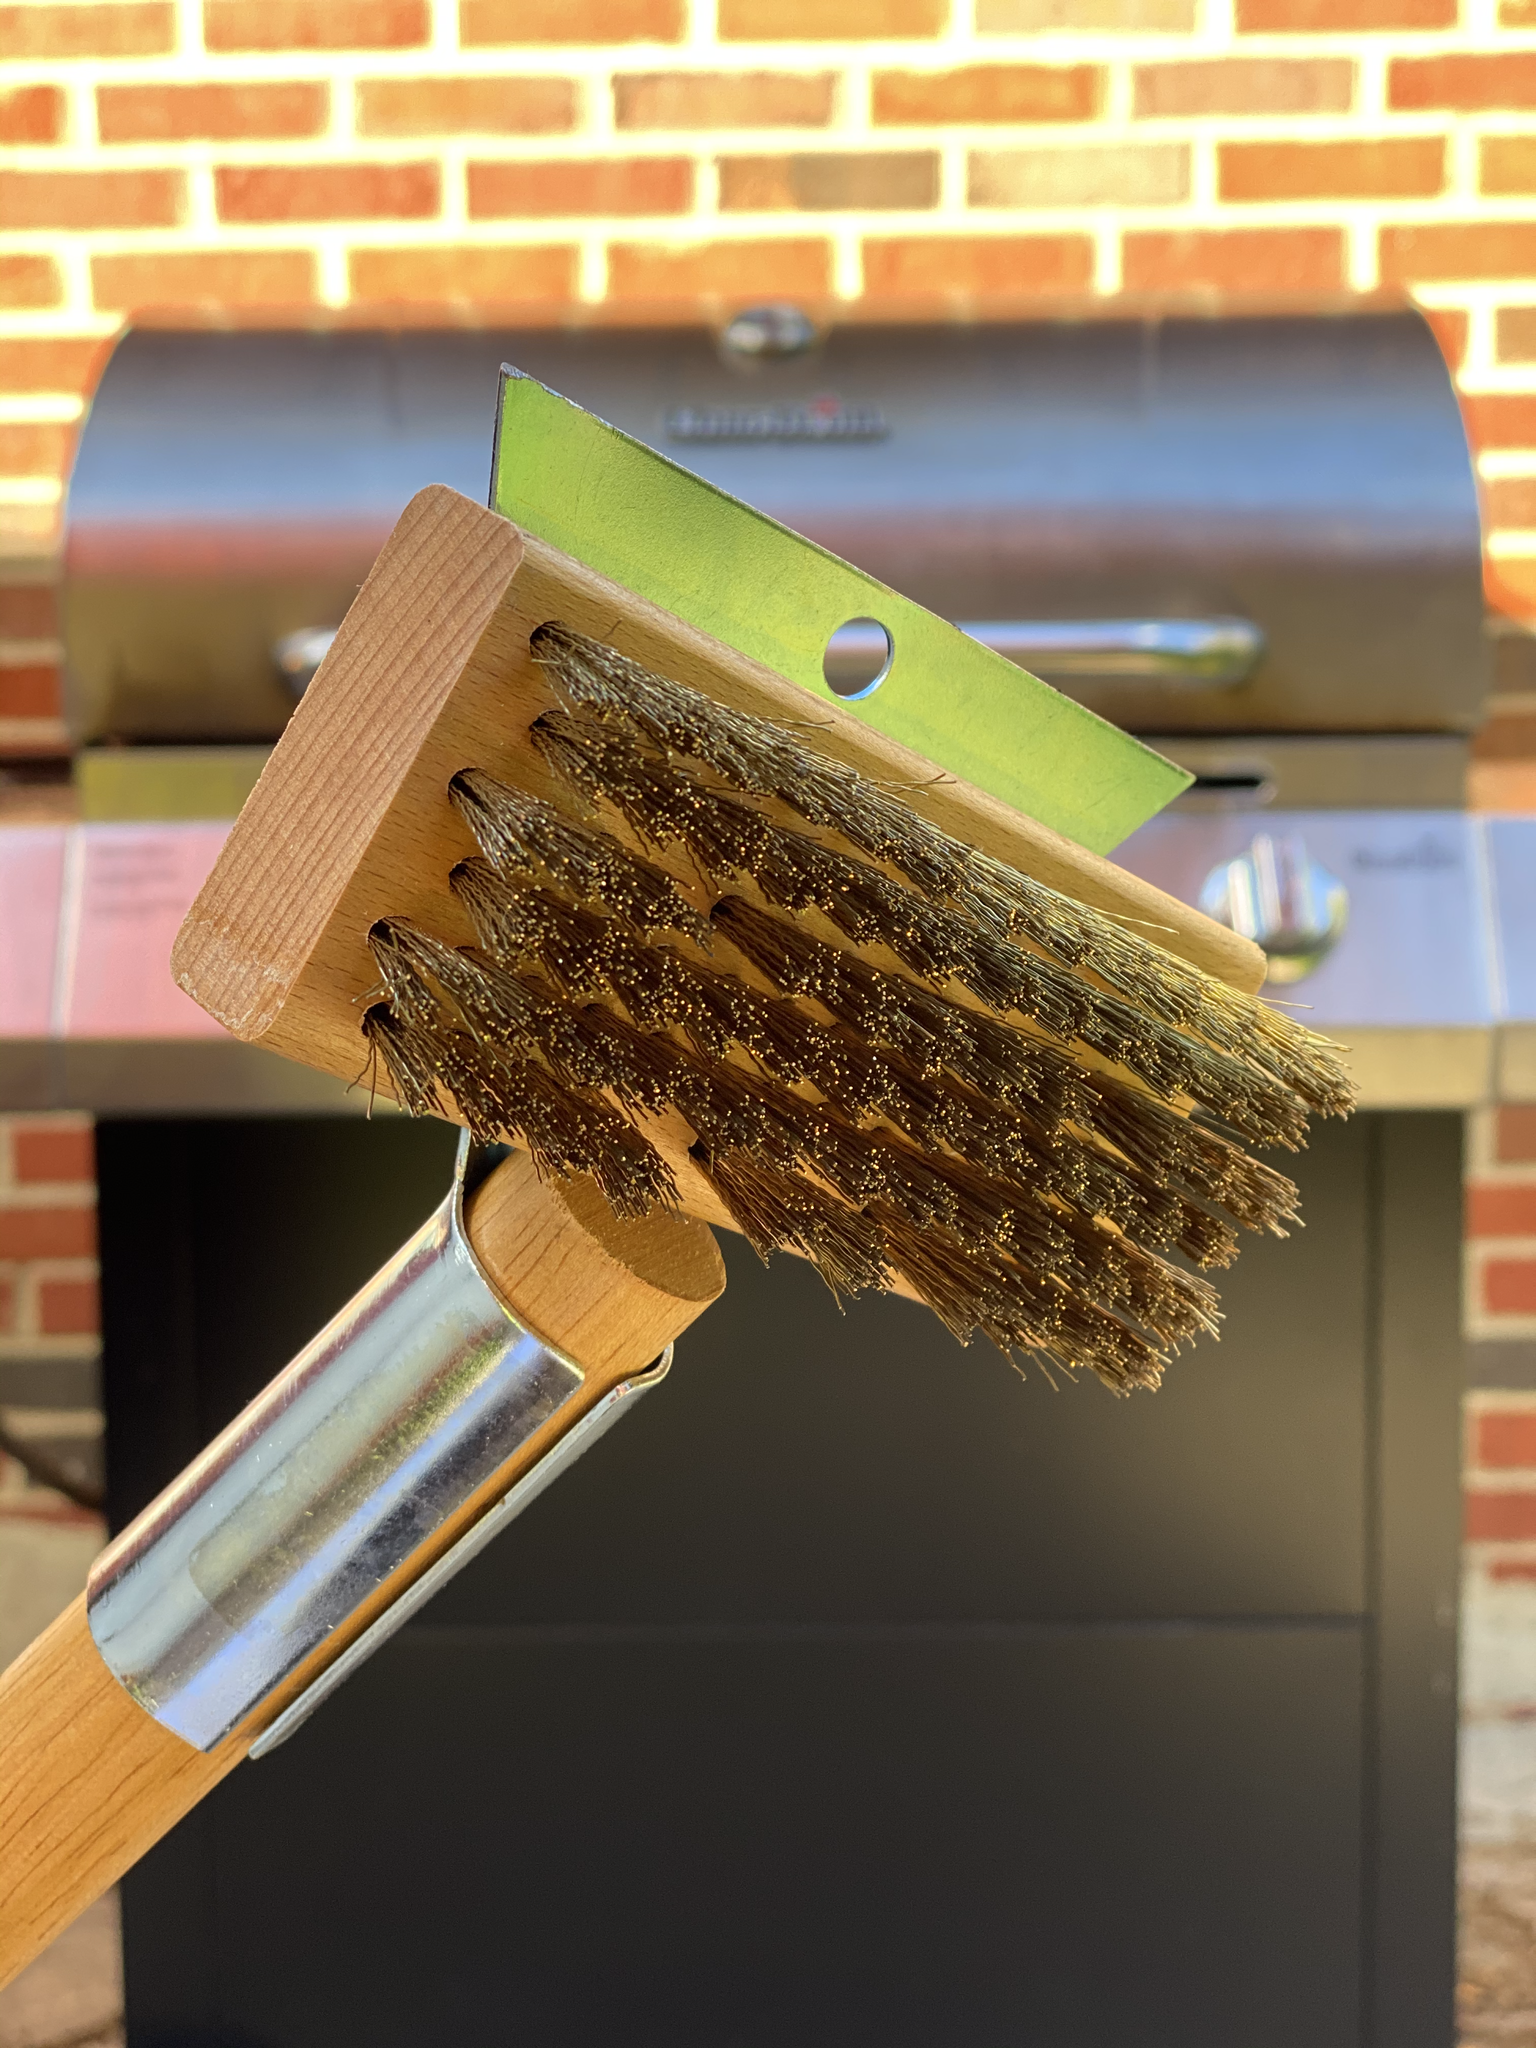 The Ultimate Grill Brush 2.0 – Lifestylebrushes